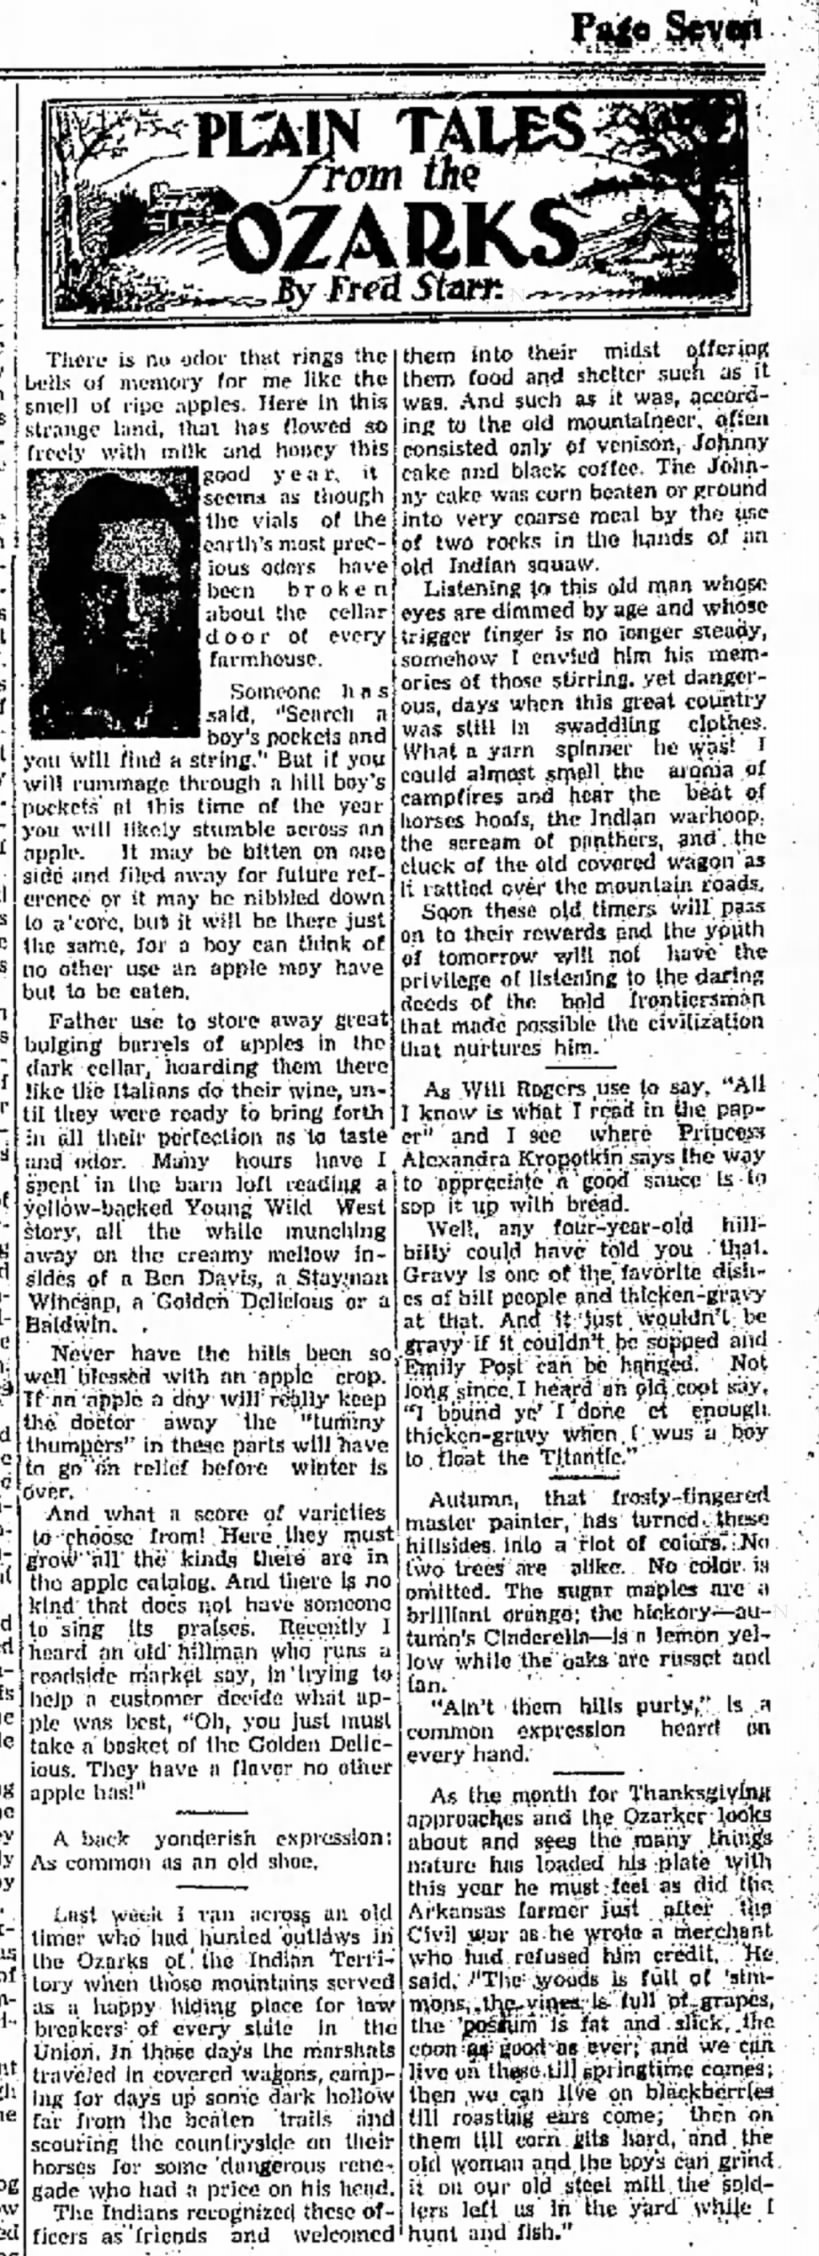 Starr column, Oct 28, 1937